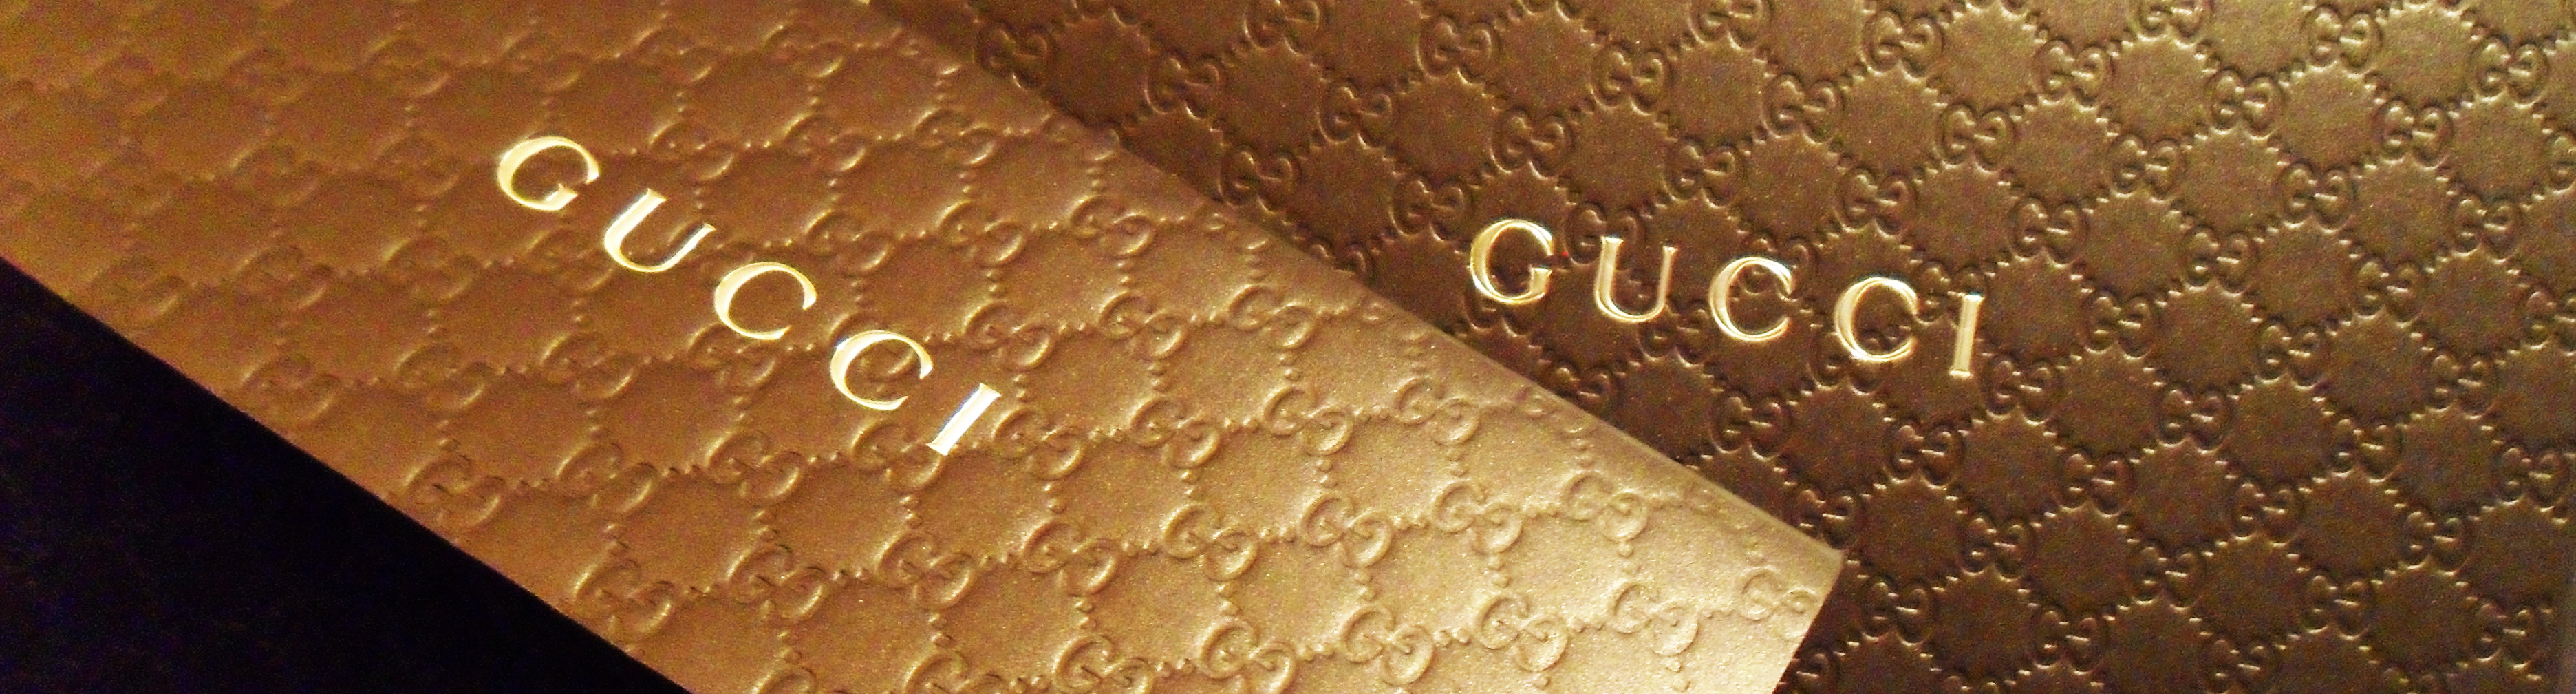 Gucci brand